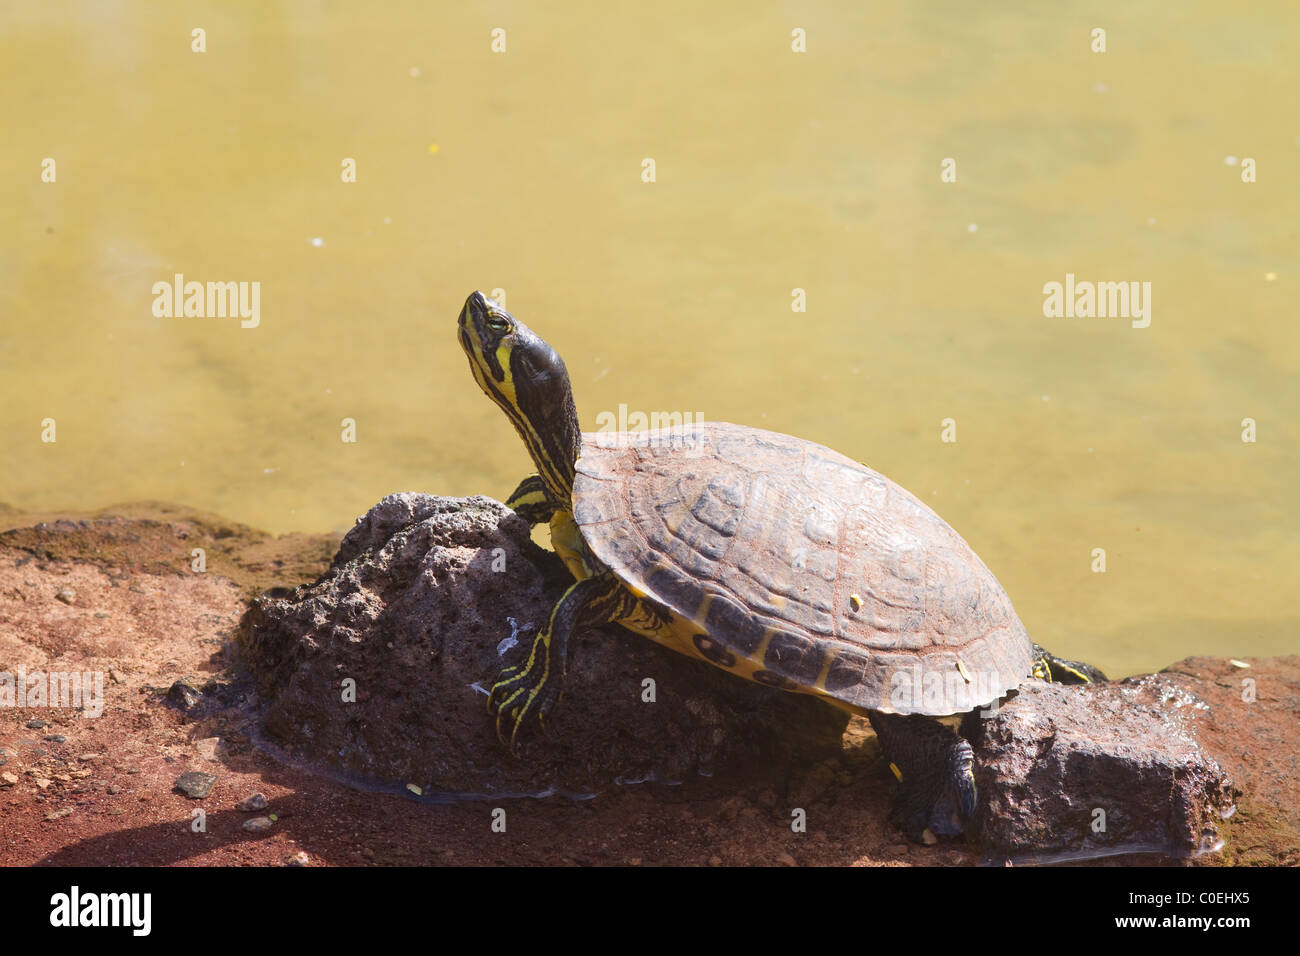 El galápago de reptiles acuáticos descansando sobre una roca Foto de stock